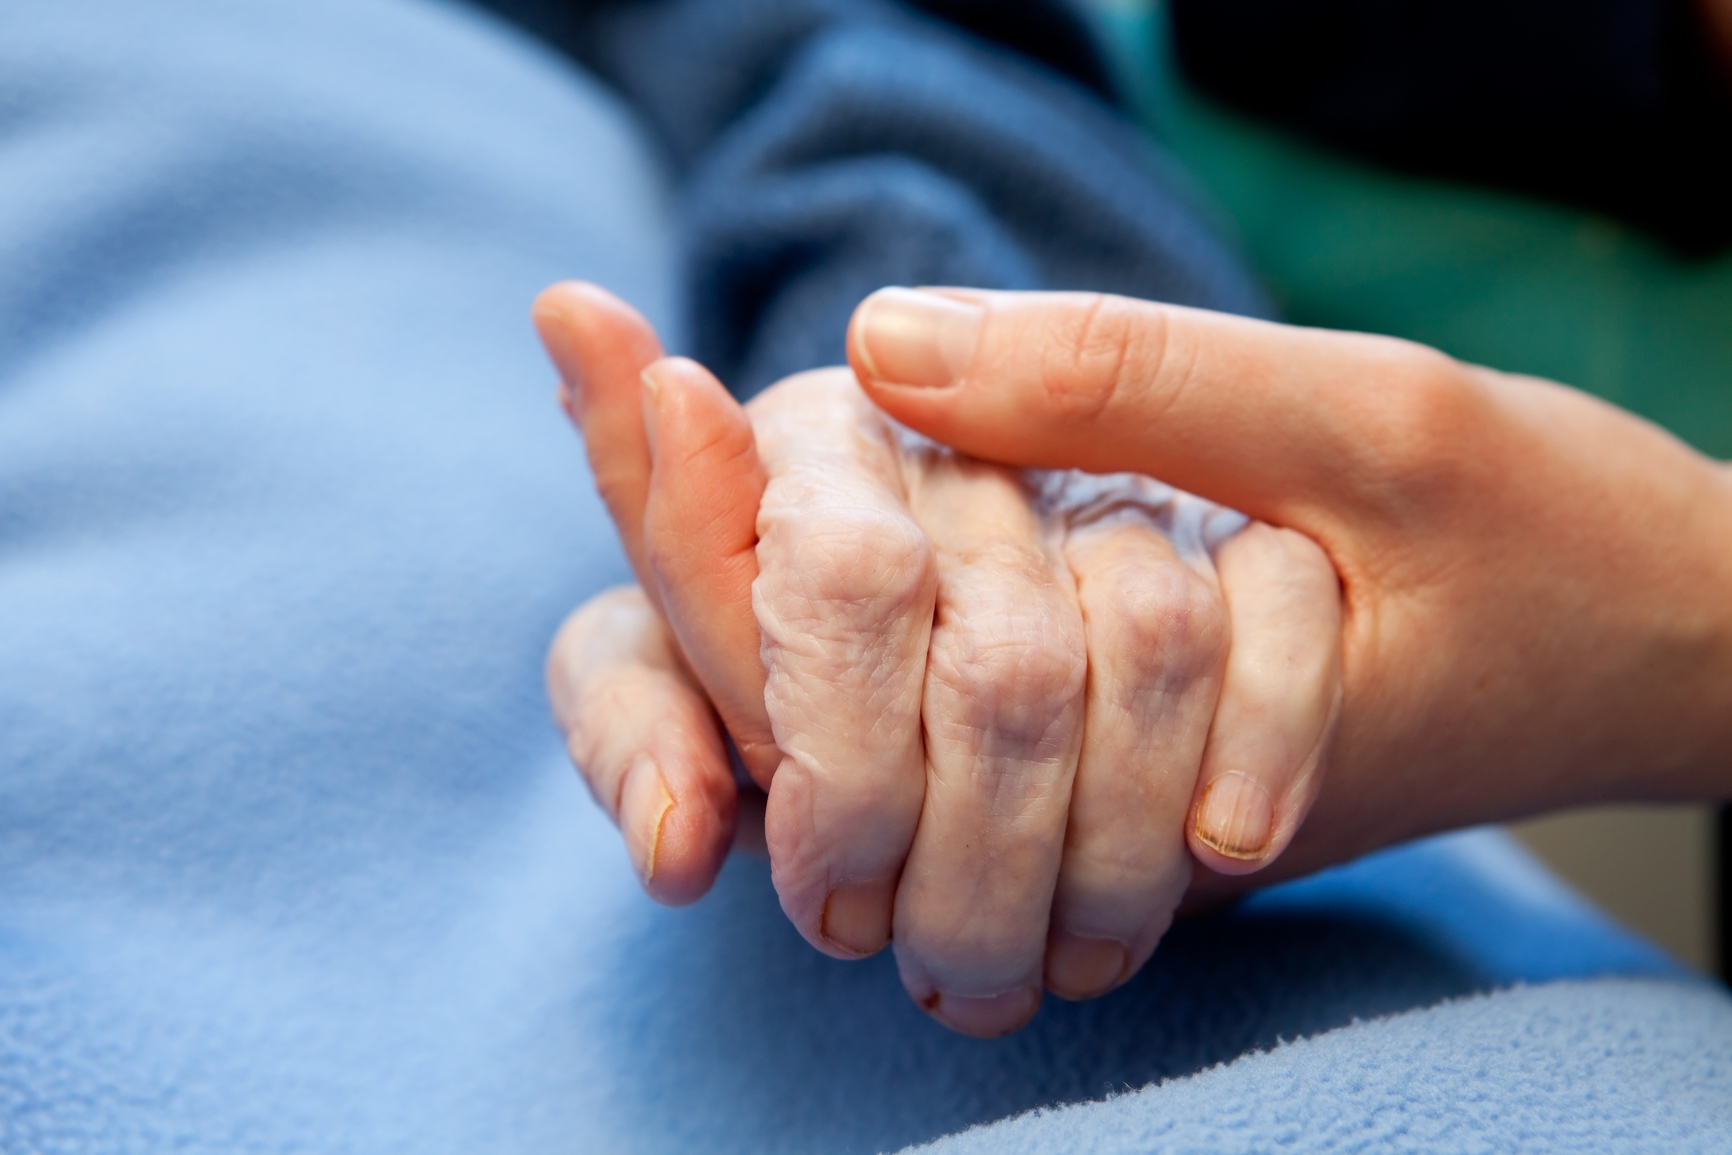 Les soins palliatifs vont bénéficier de deux nouvelles structures de prise en charge en Valais.